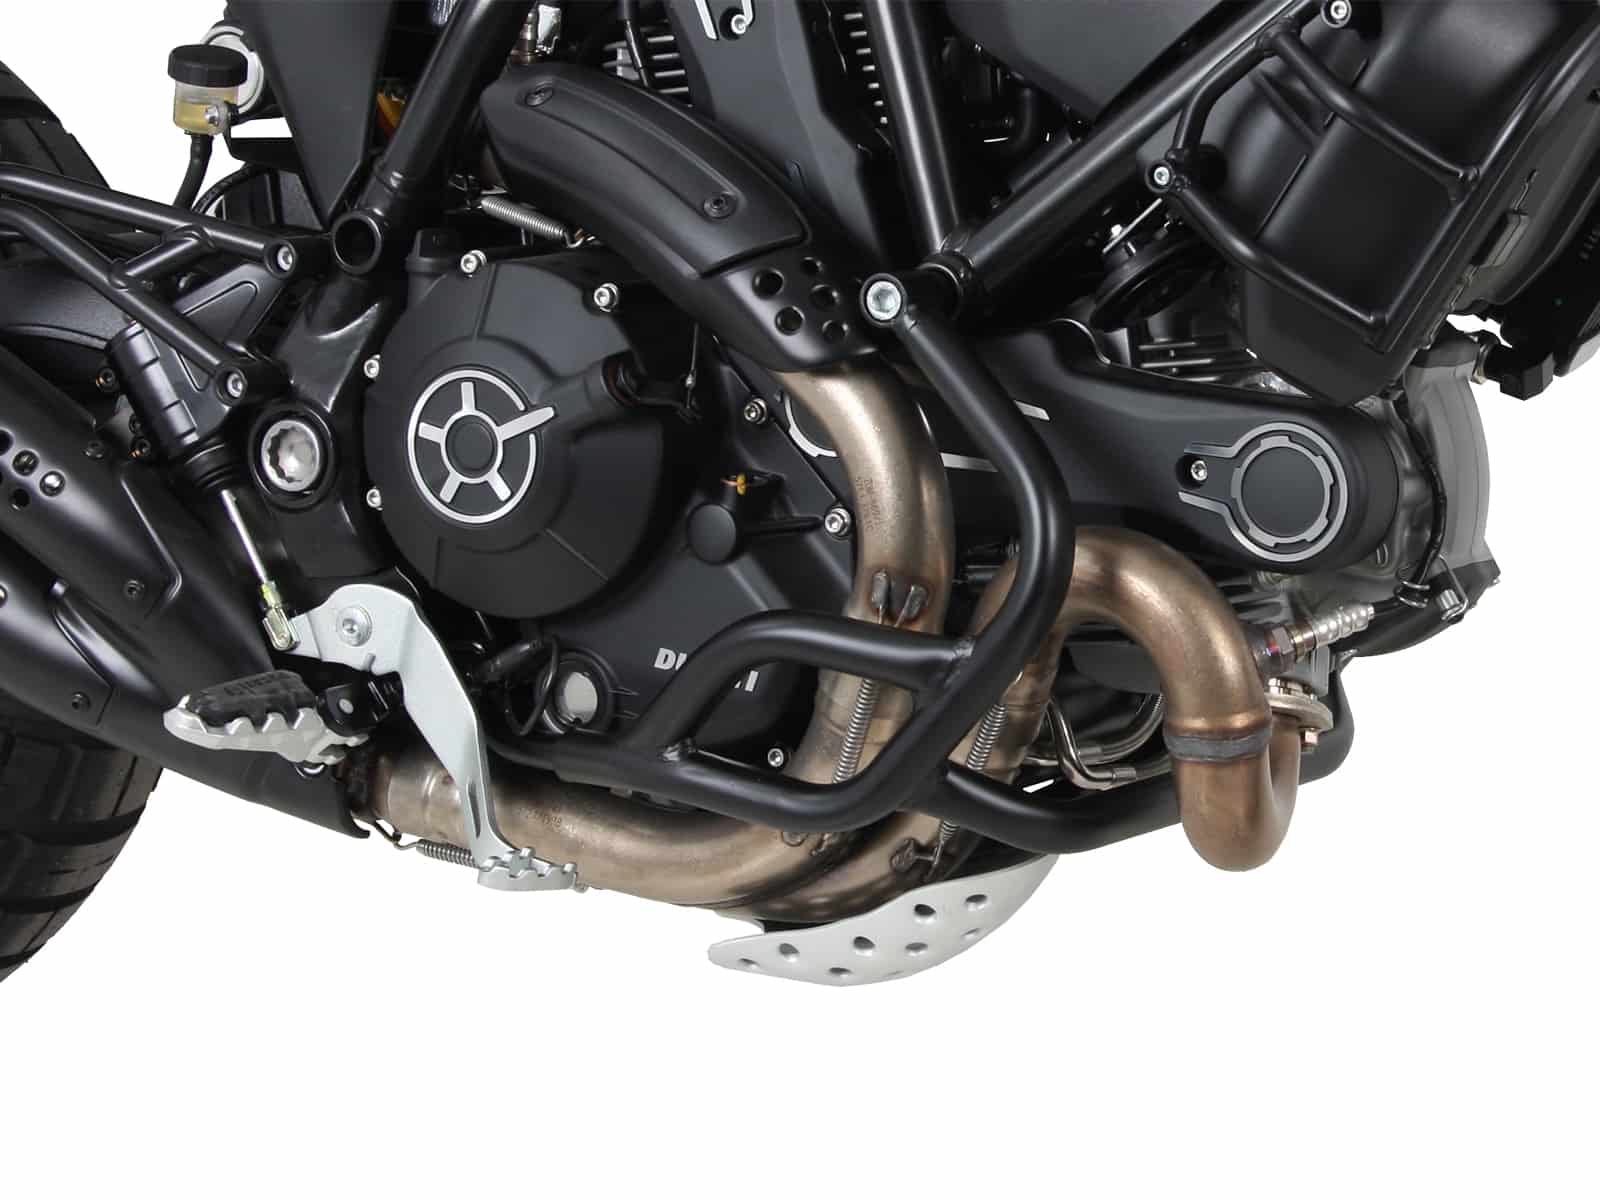 Engine protection bar black for Ducati Scrambler 800 Desert Sled (2017-)